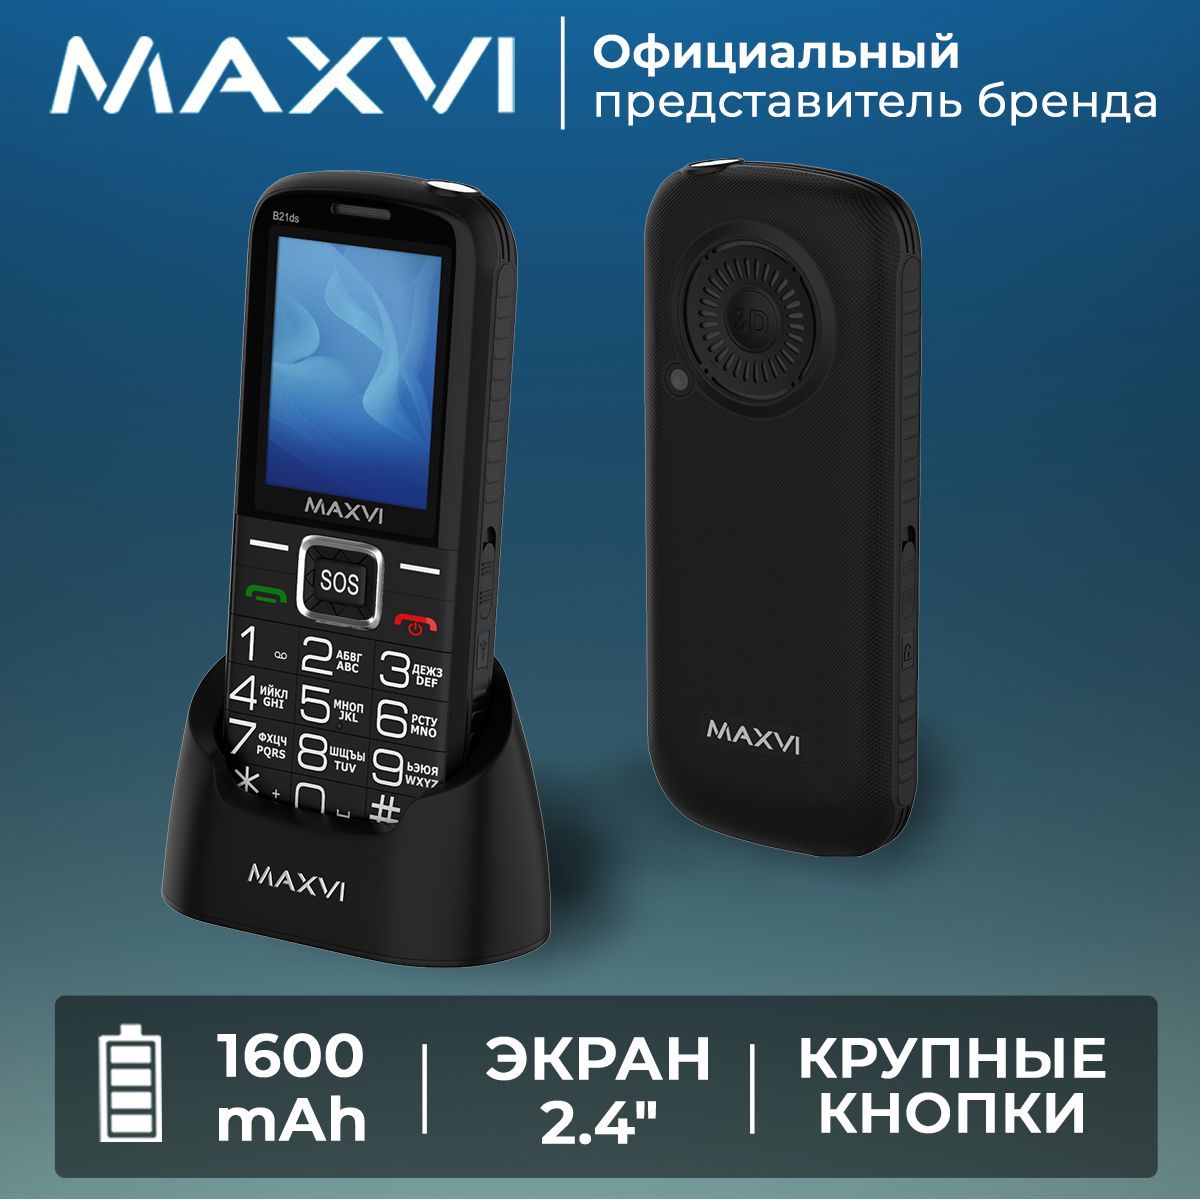 MaxviМобильныйтелефонB21DS/сдок-станциейвкомплекте/кнопкаSOS/крупныеклавиши/громкийзвук/емкийаккумулятор/большойэкран,черный